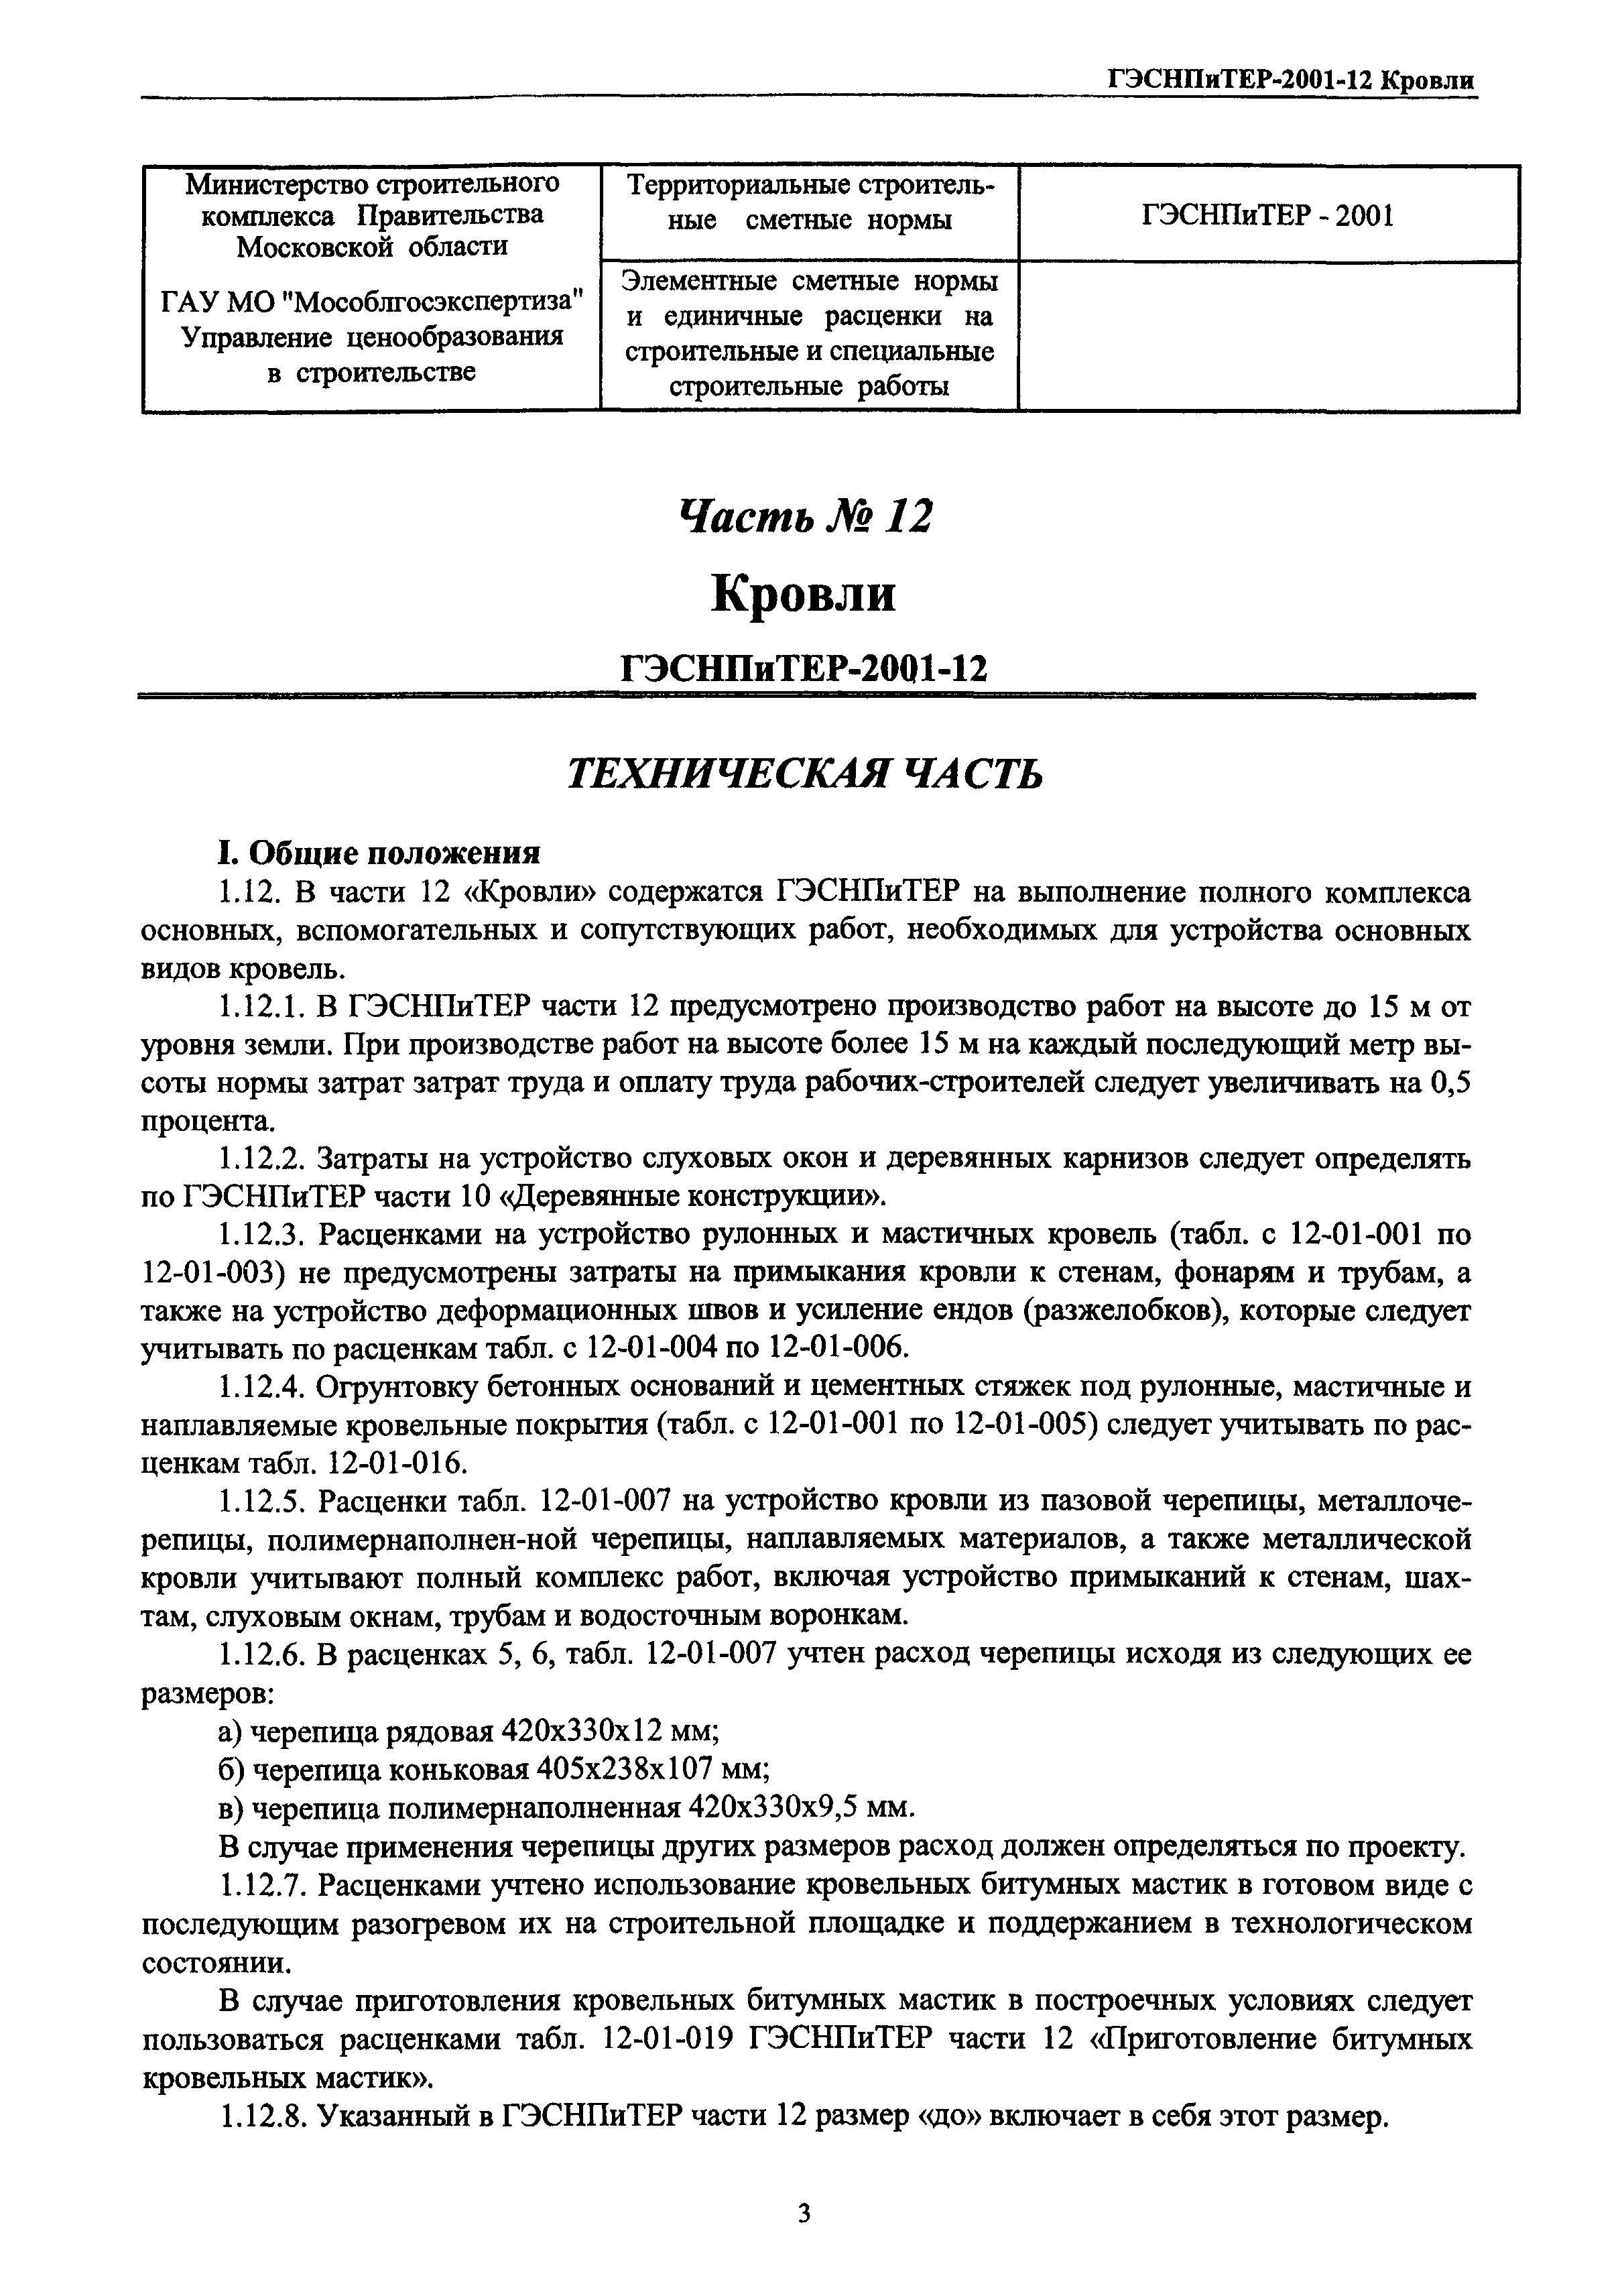 ГЭСНПиТЕР 2001-12 Московской области